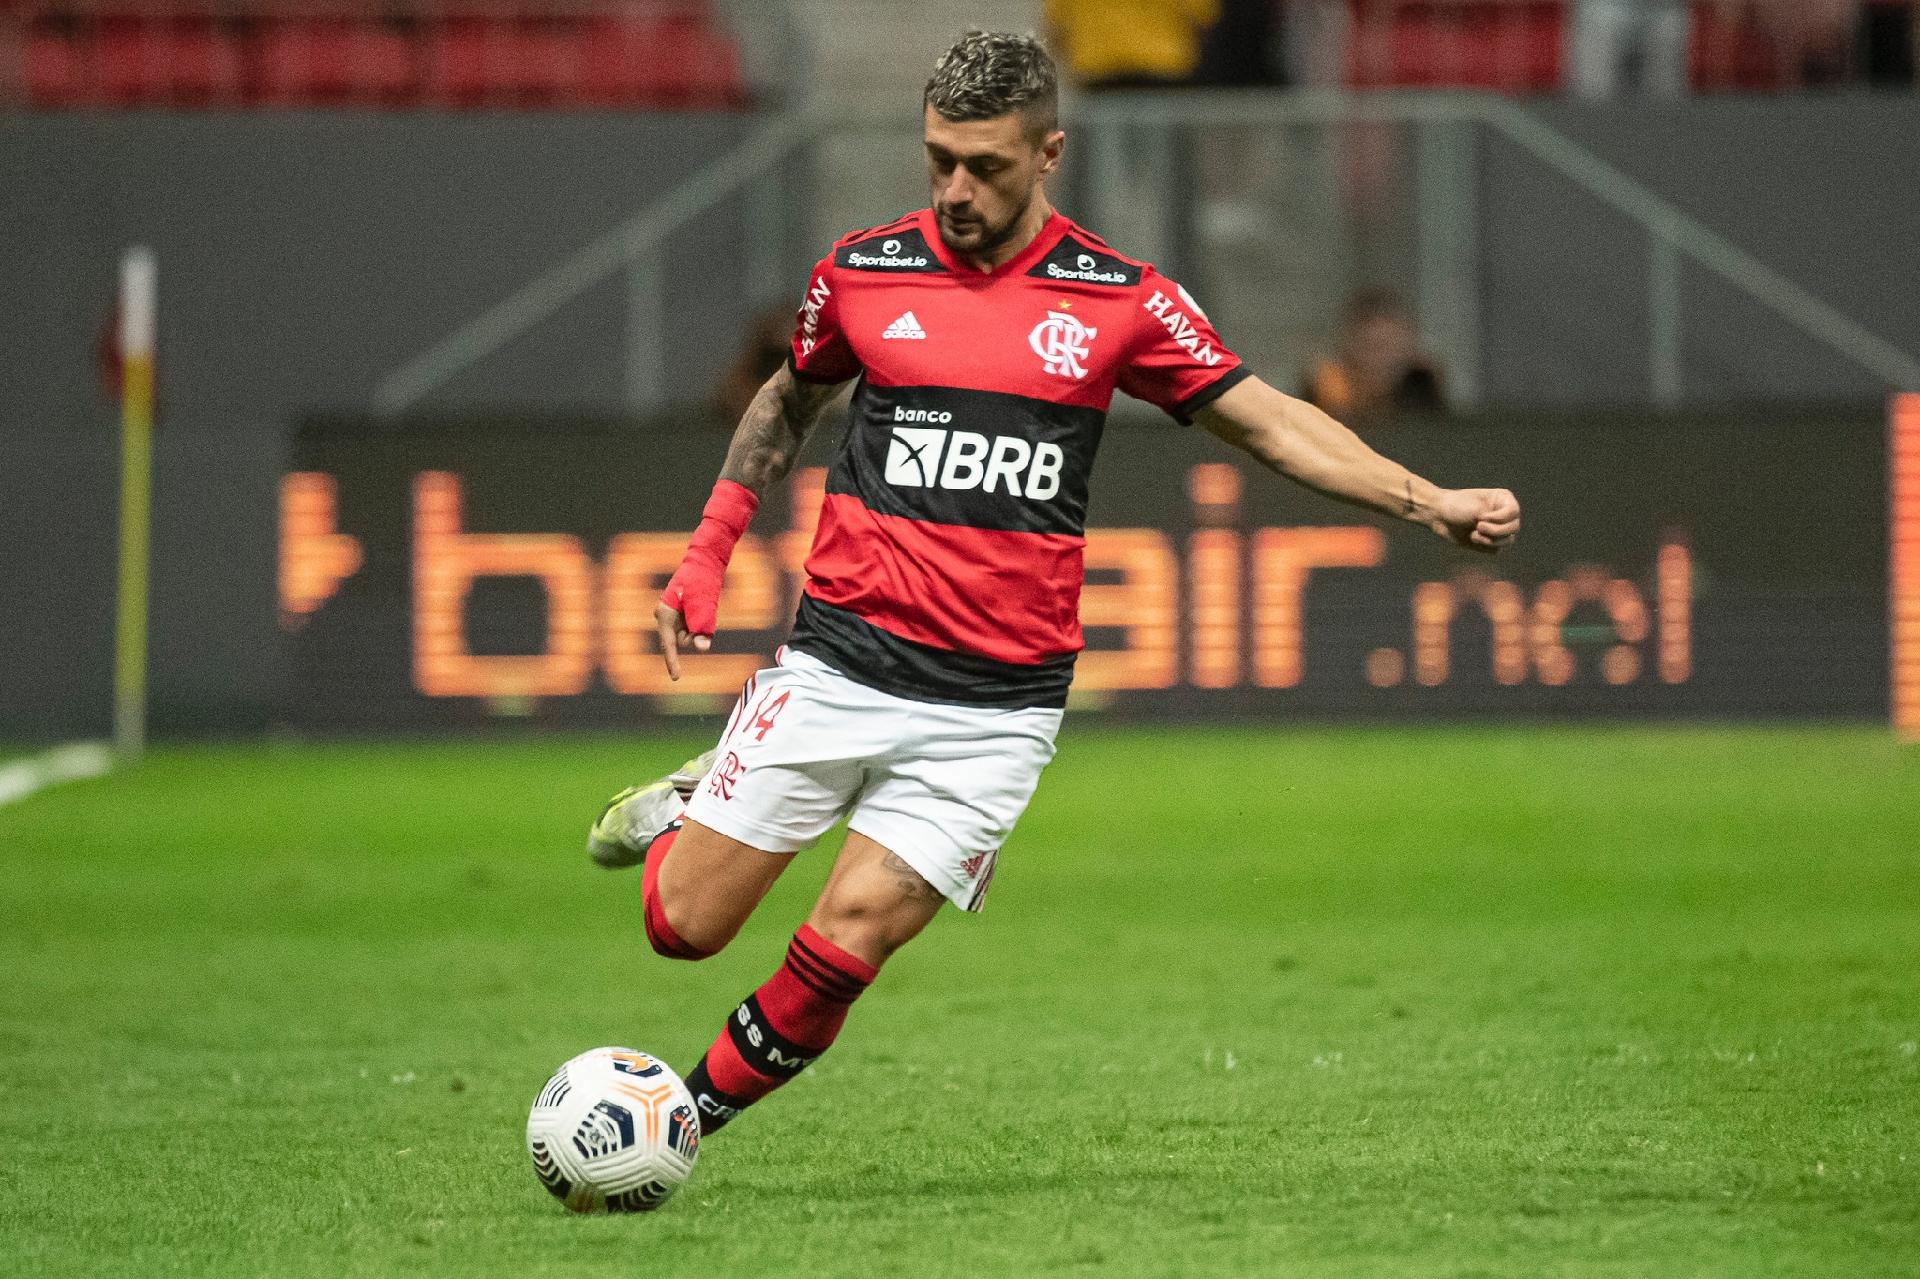 OPINIÃO: Flamengo fez elenco para três competições, não para Eliminatórias